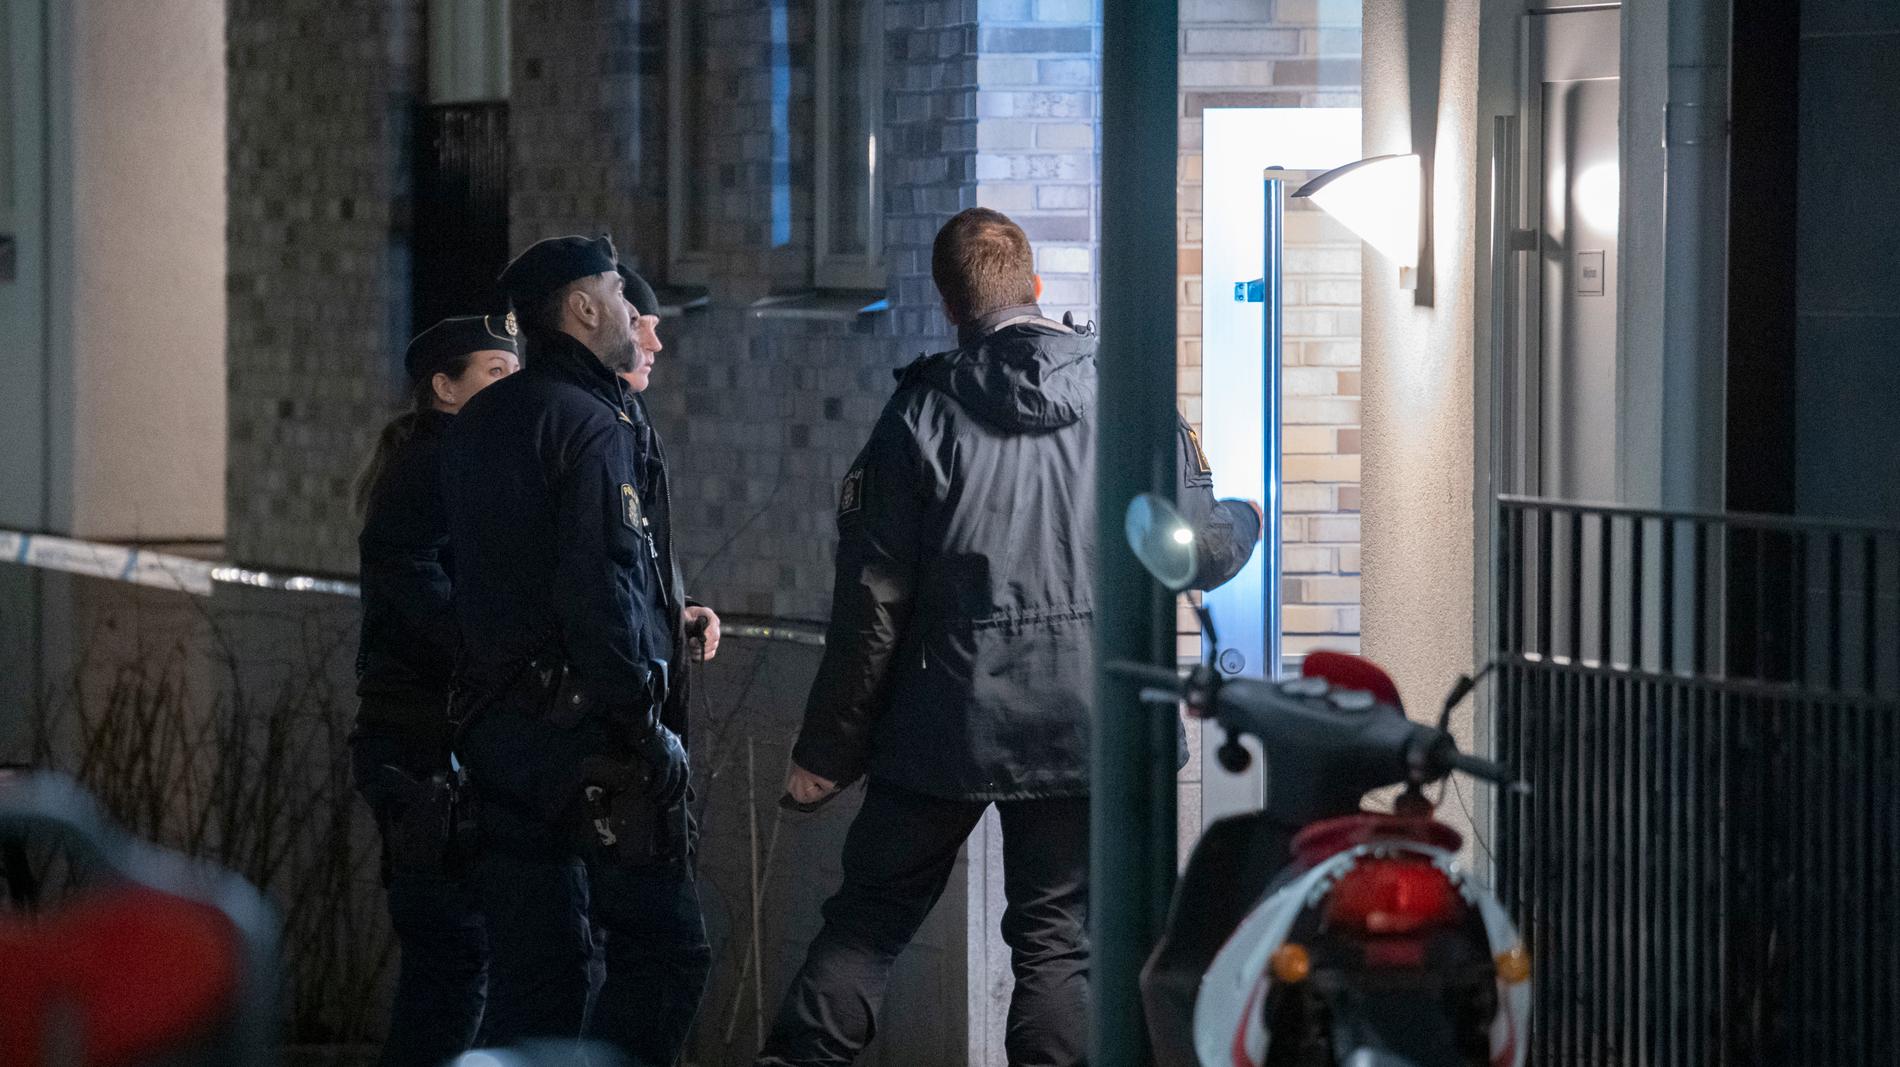 Polis och kriminaltekniker på plats i stadsdelen Hyllie i Malmö efter en detonation vid en entré.